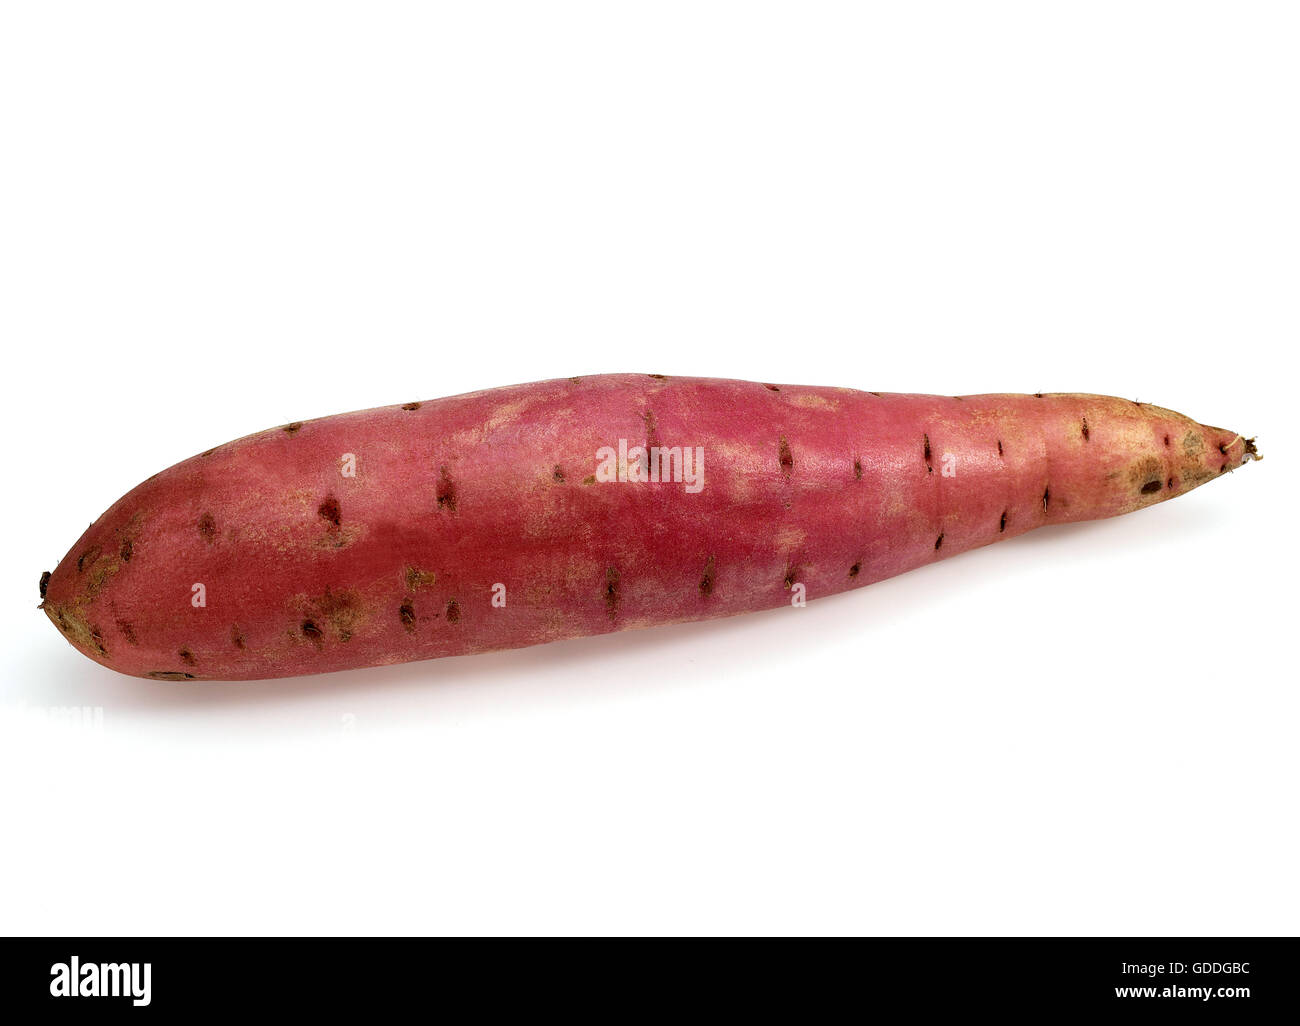 SWEET POTATO ipomoea batatas AGAINST WHITE BACKGROUND Stock Photo